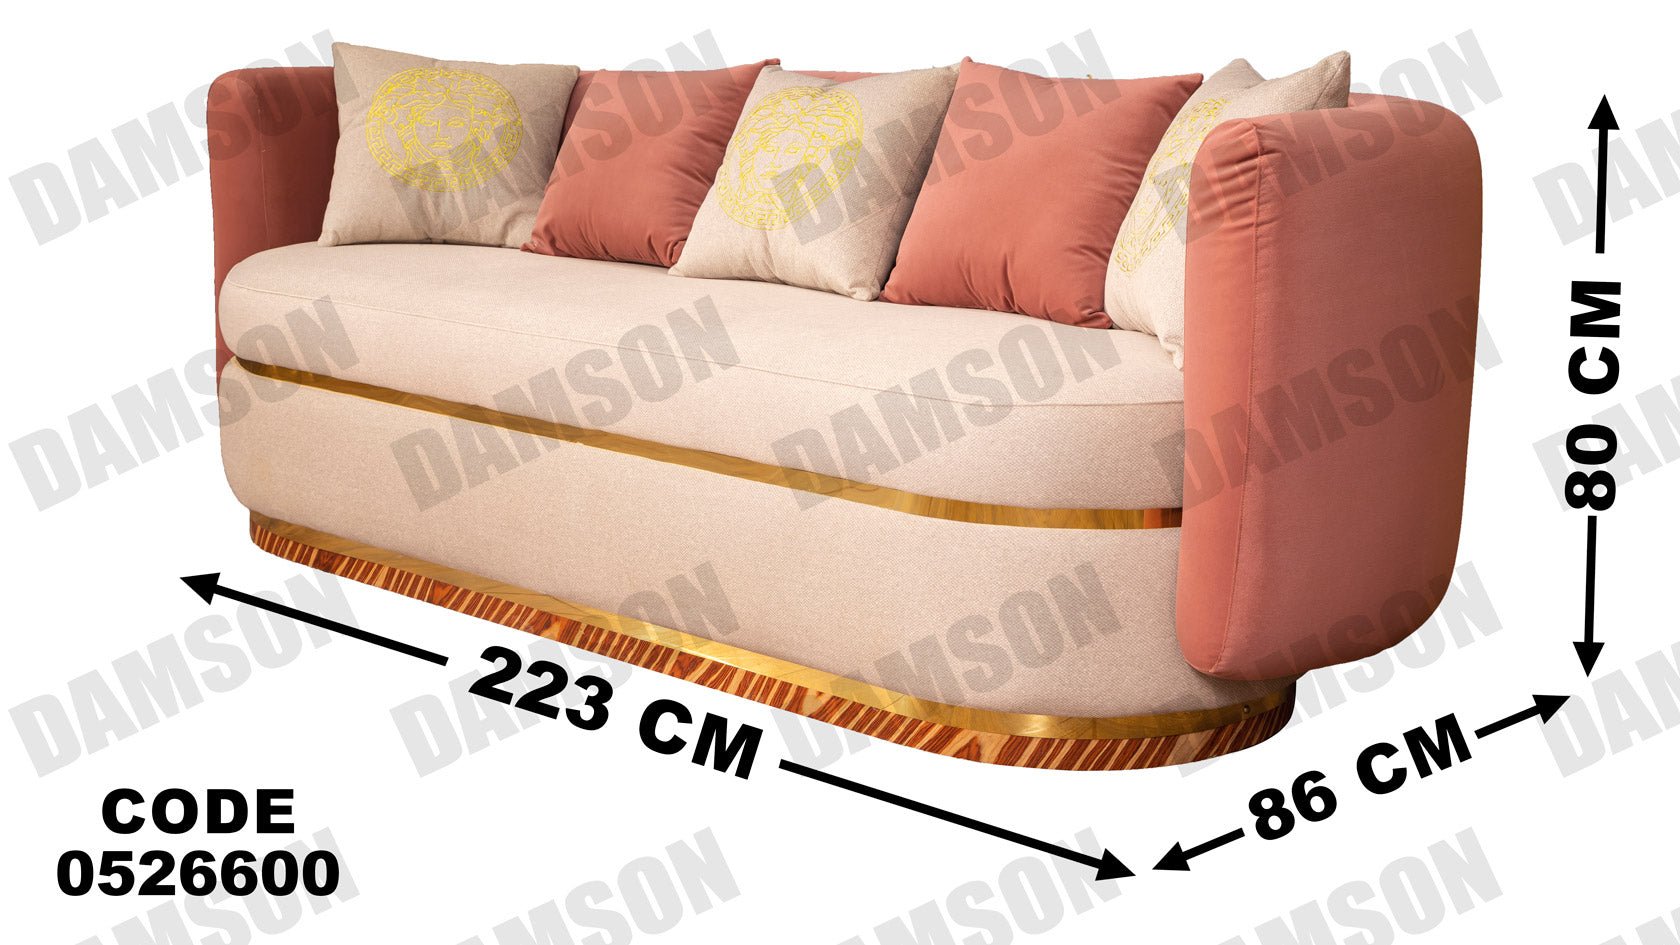 انترية 266 - Damson Furnitureانترية 266